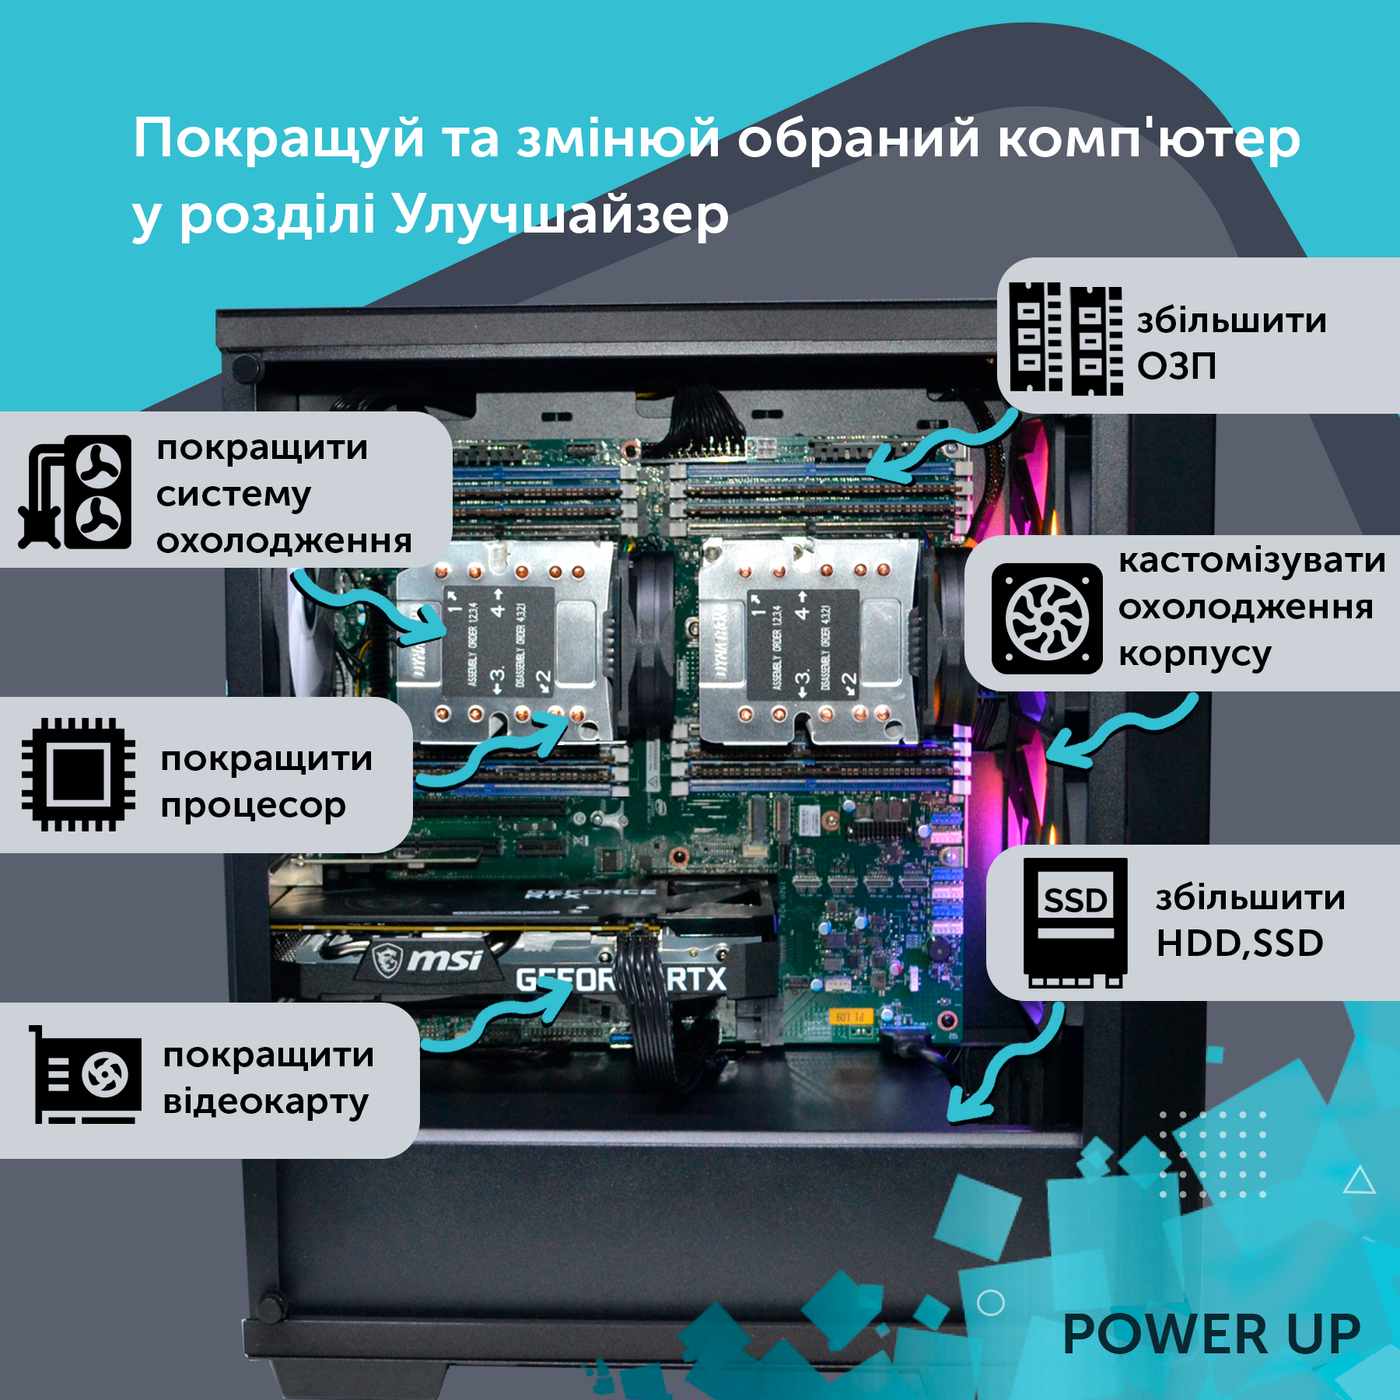 Двухпроцессорная рабочая станция PowerUp #128 Xeon E5 2690 v3 x2/64 GB/HDD 1 TB/SSD 256GB/NVIDIA Quadro RTX A4000 16GB